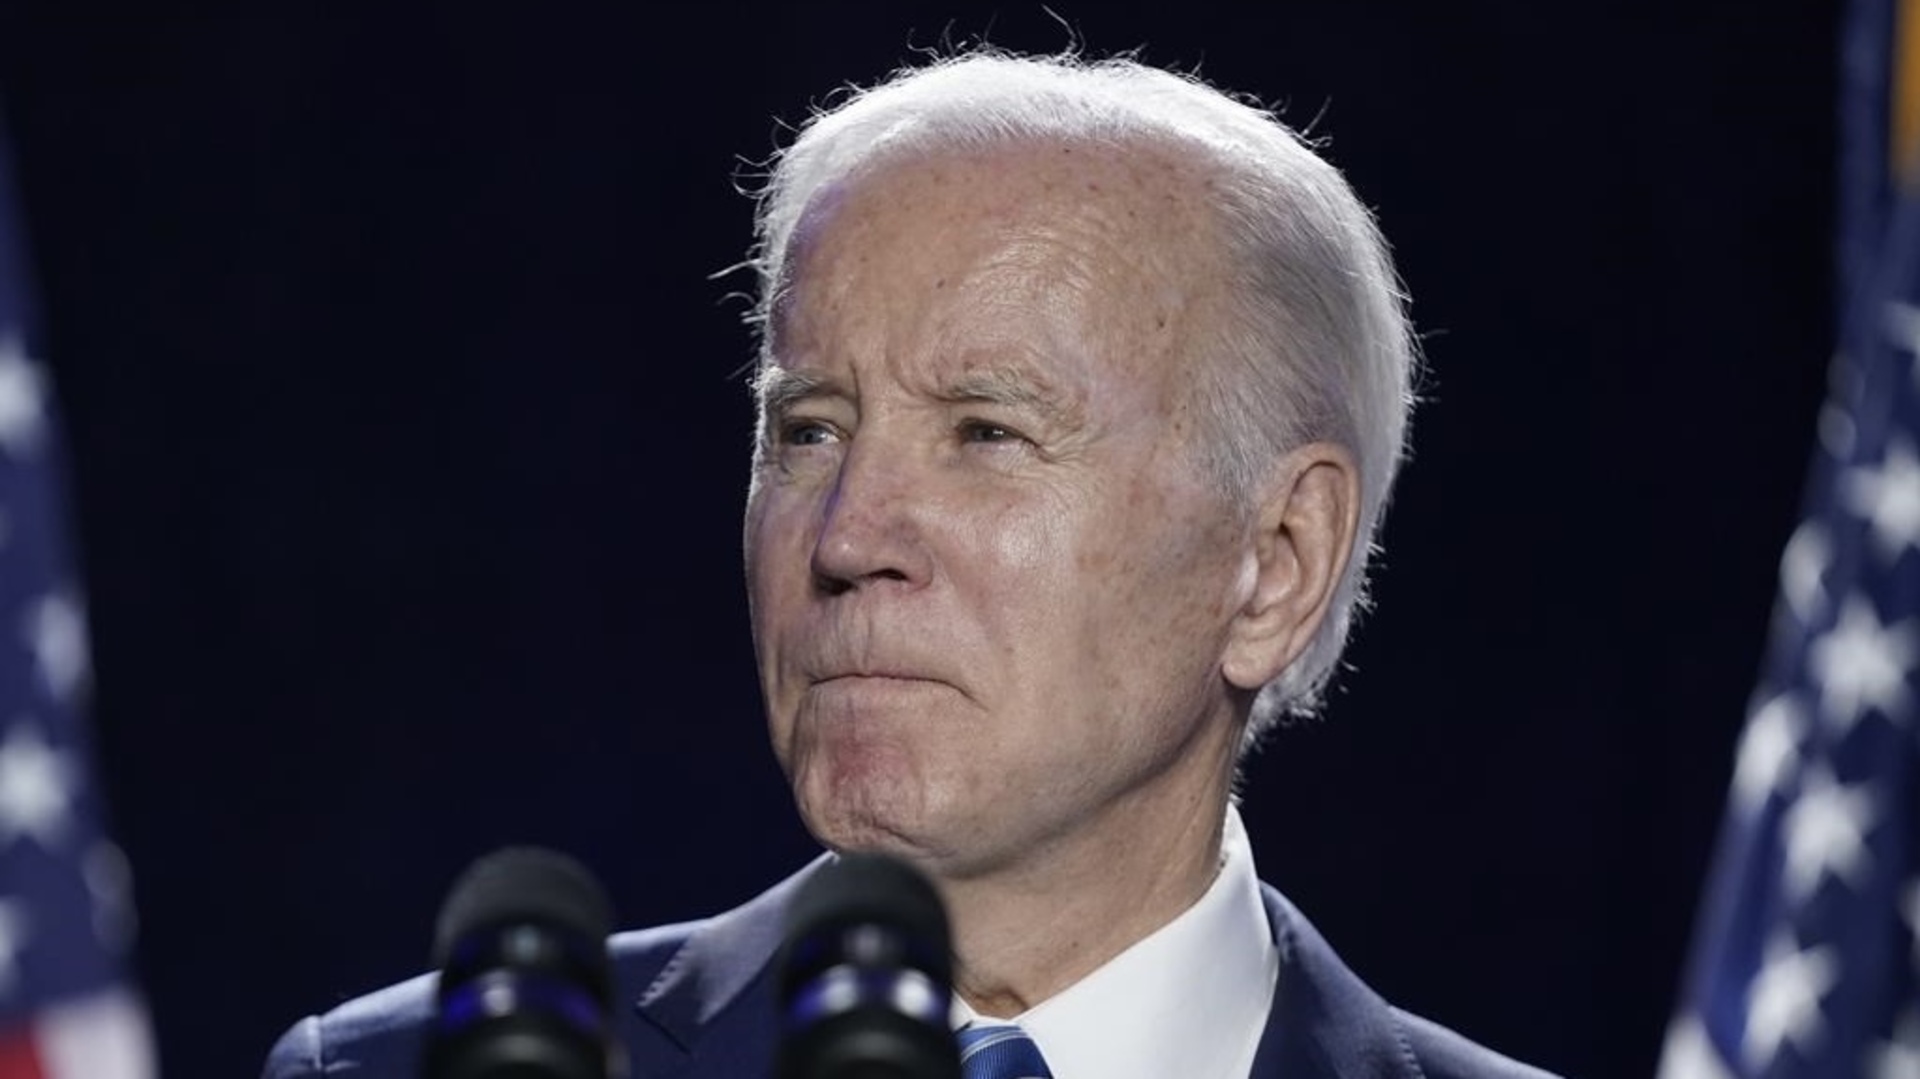 Joe Biden drops out of U.S. Presidential race